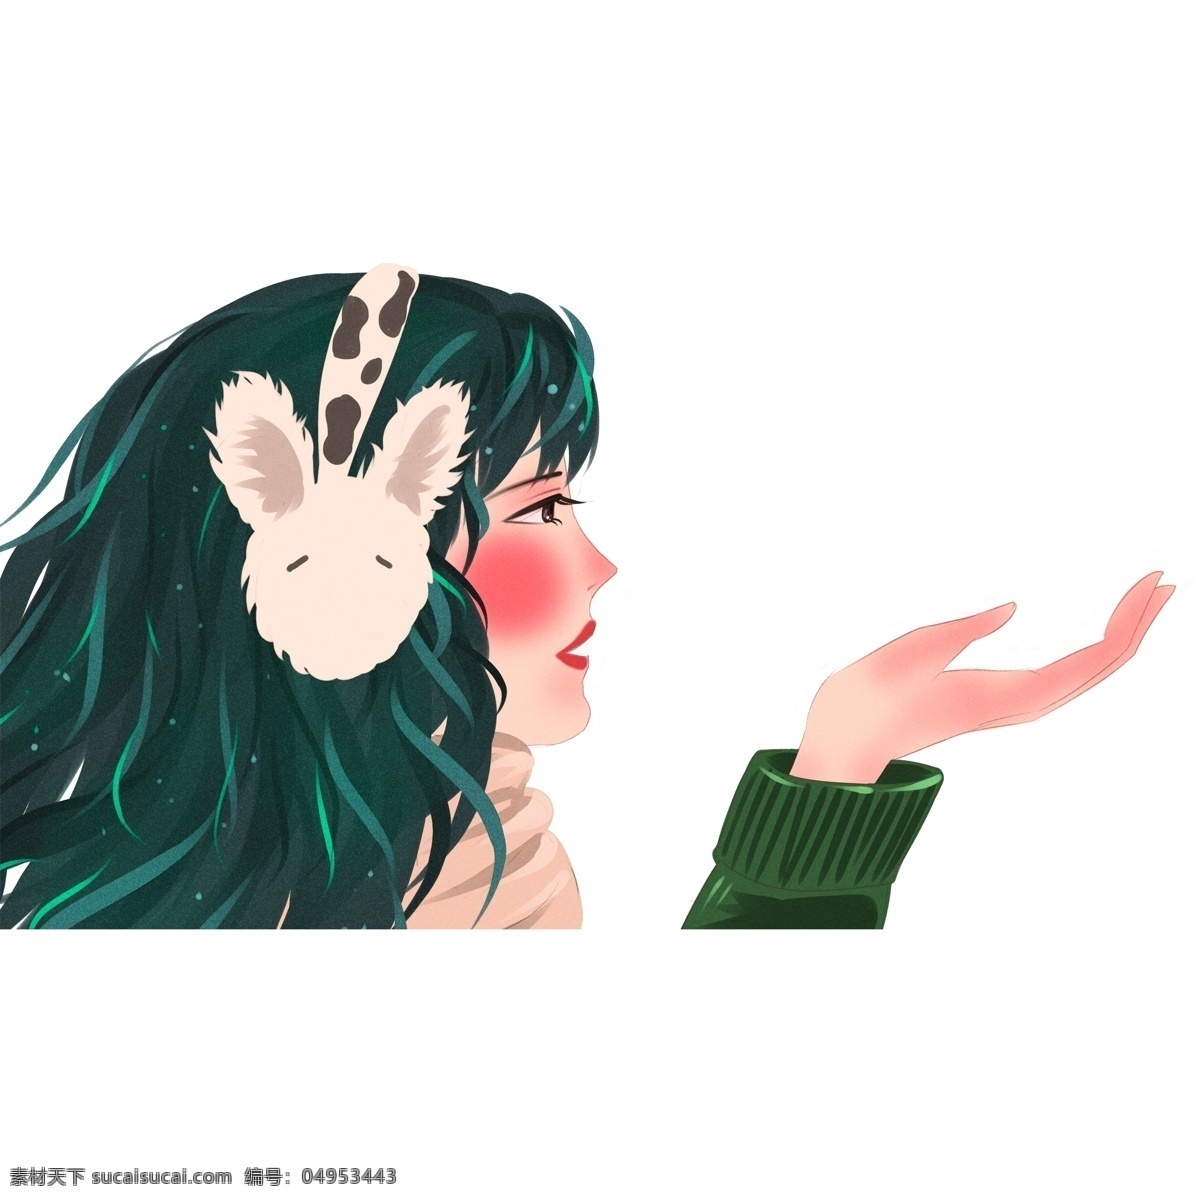 冬季 戴 耳罩 女孩 商用 元素 女生 插画 手绘 人物 兔子耳罩